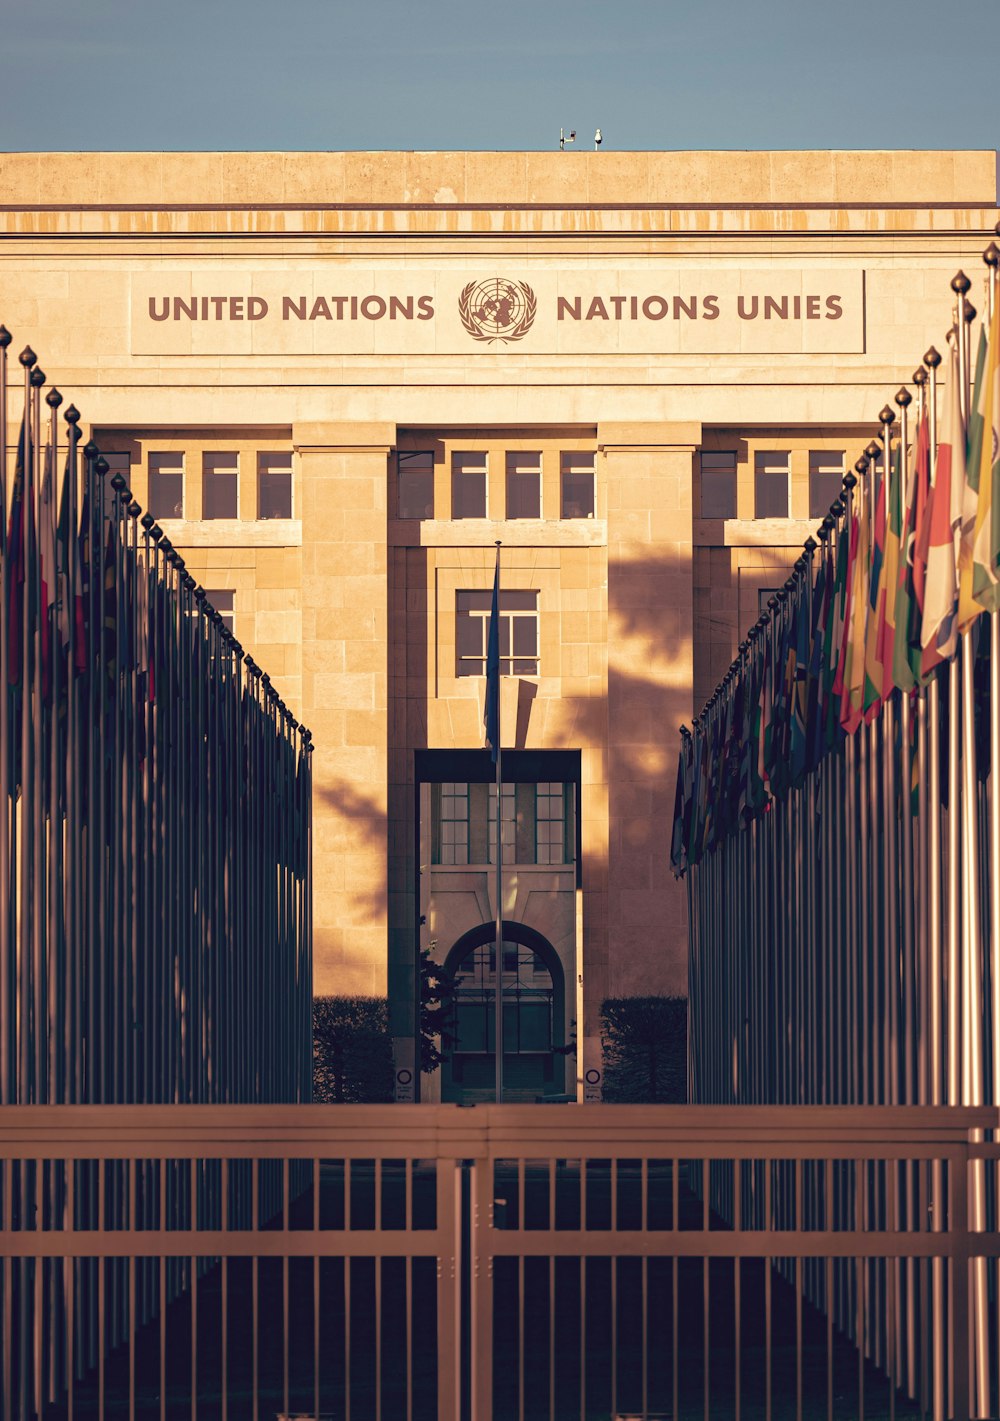 La entrada al edificio UNES de las Naciones Unidas